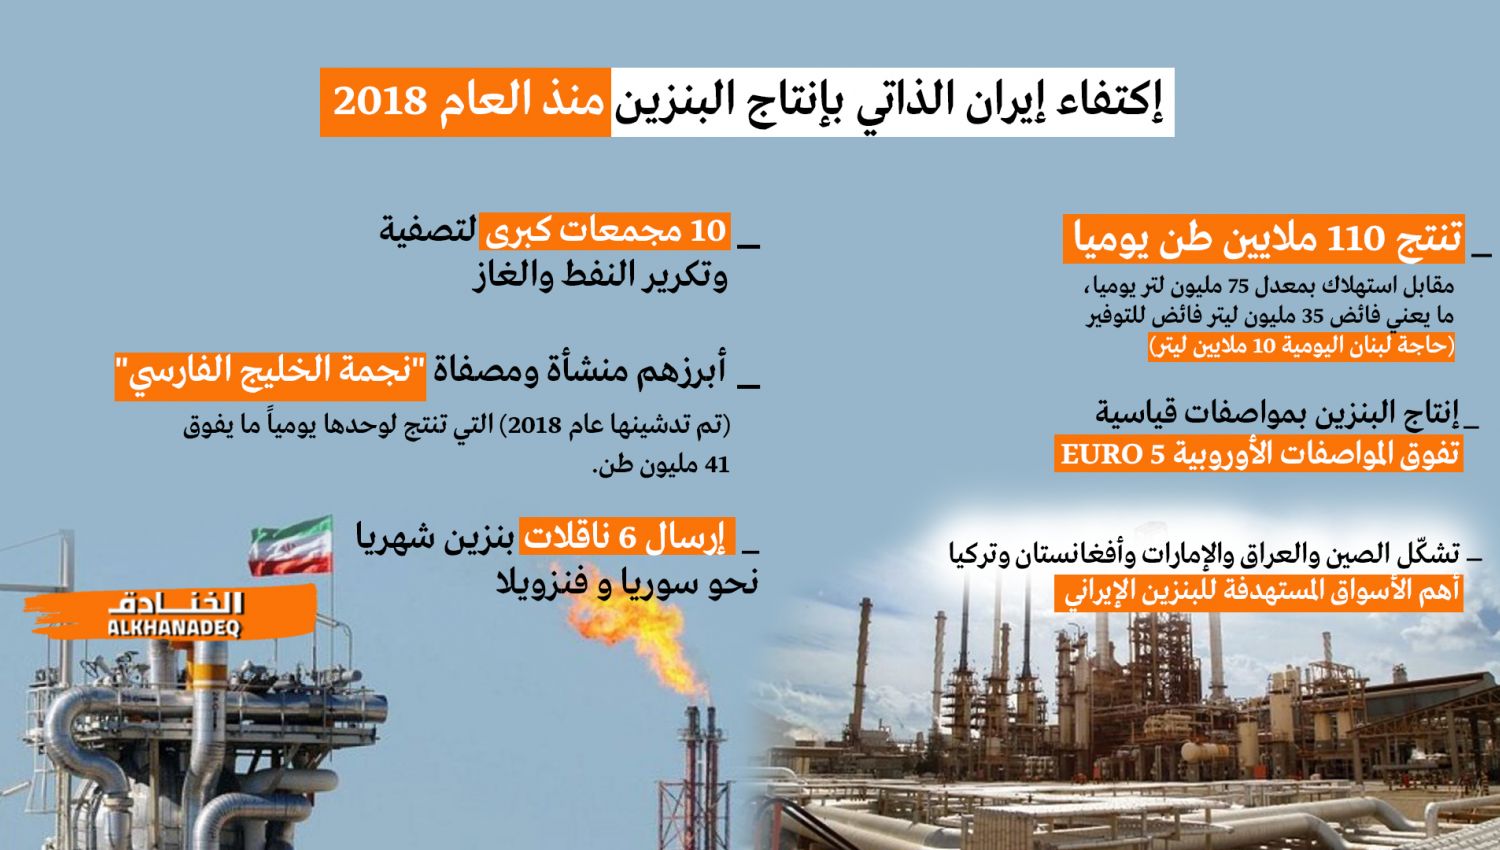 إيران تصدر البنزين منذ العام 2018